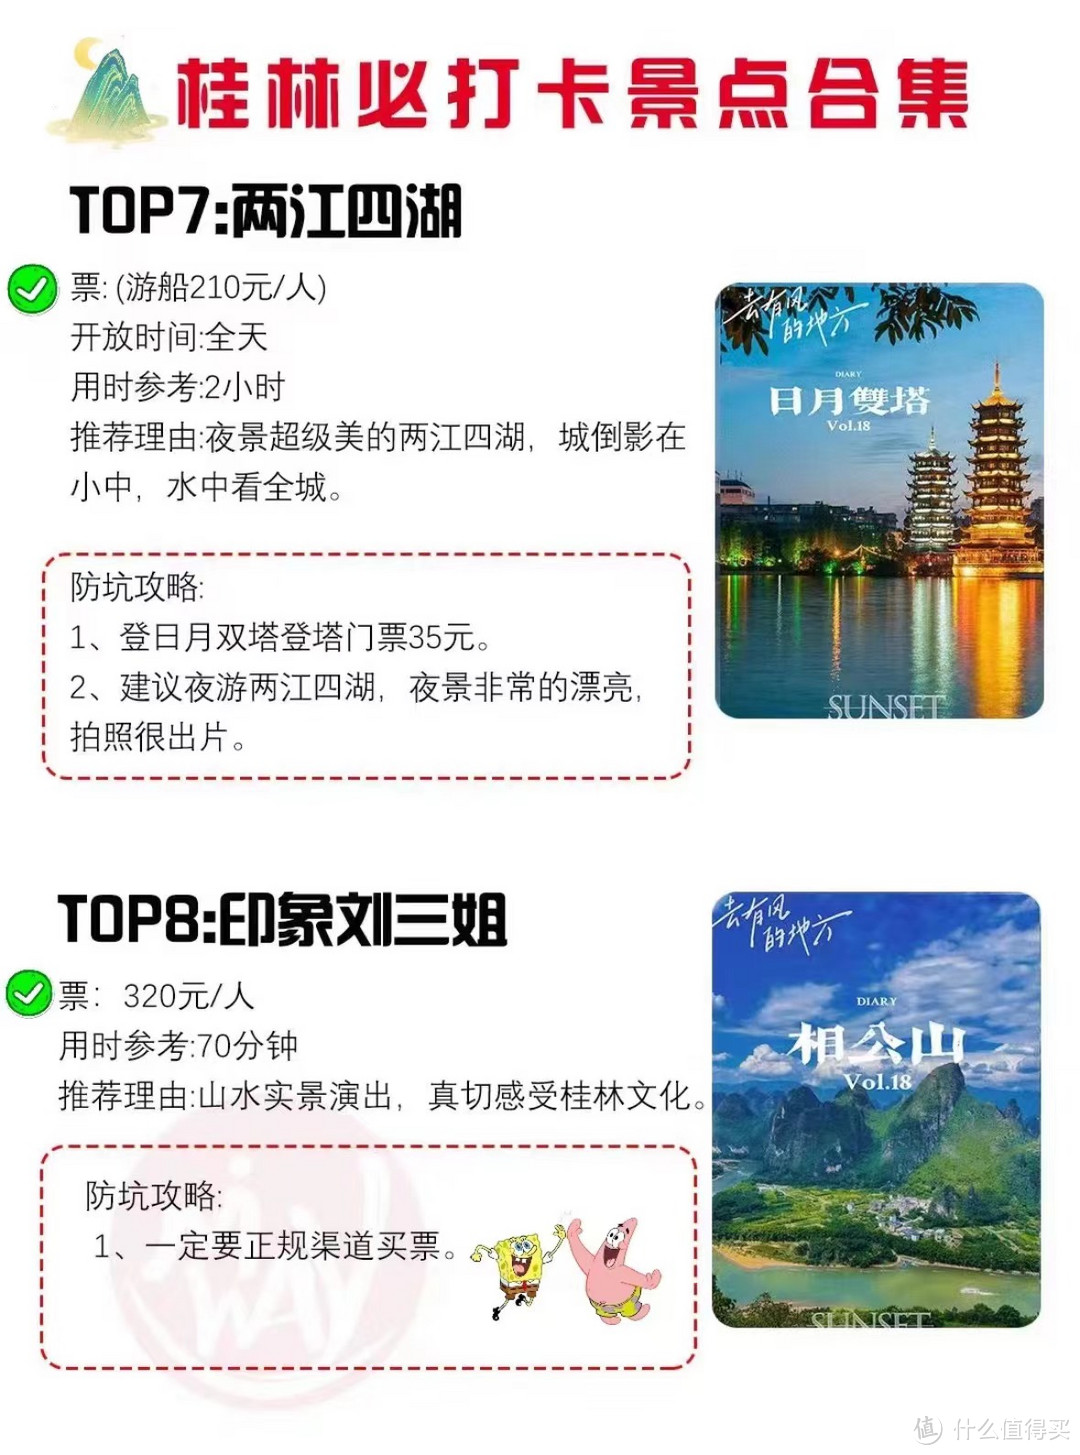 8-9月份桂林旅游必打卡景点合集